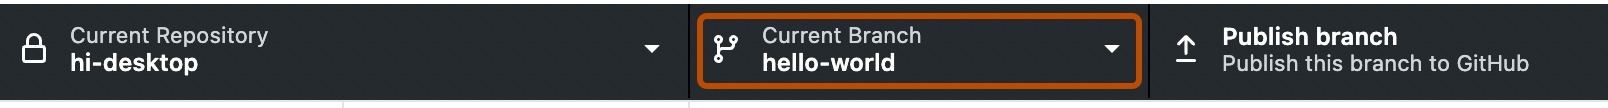 リポジトリ バーのスクリーンショット。 ドロップダウン メニューを示す下向き矢印が付いた [Current Branch] というボタンがオレンジ色の枠線で囲まれています。